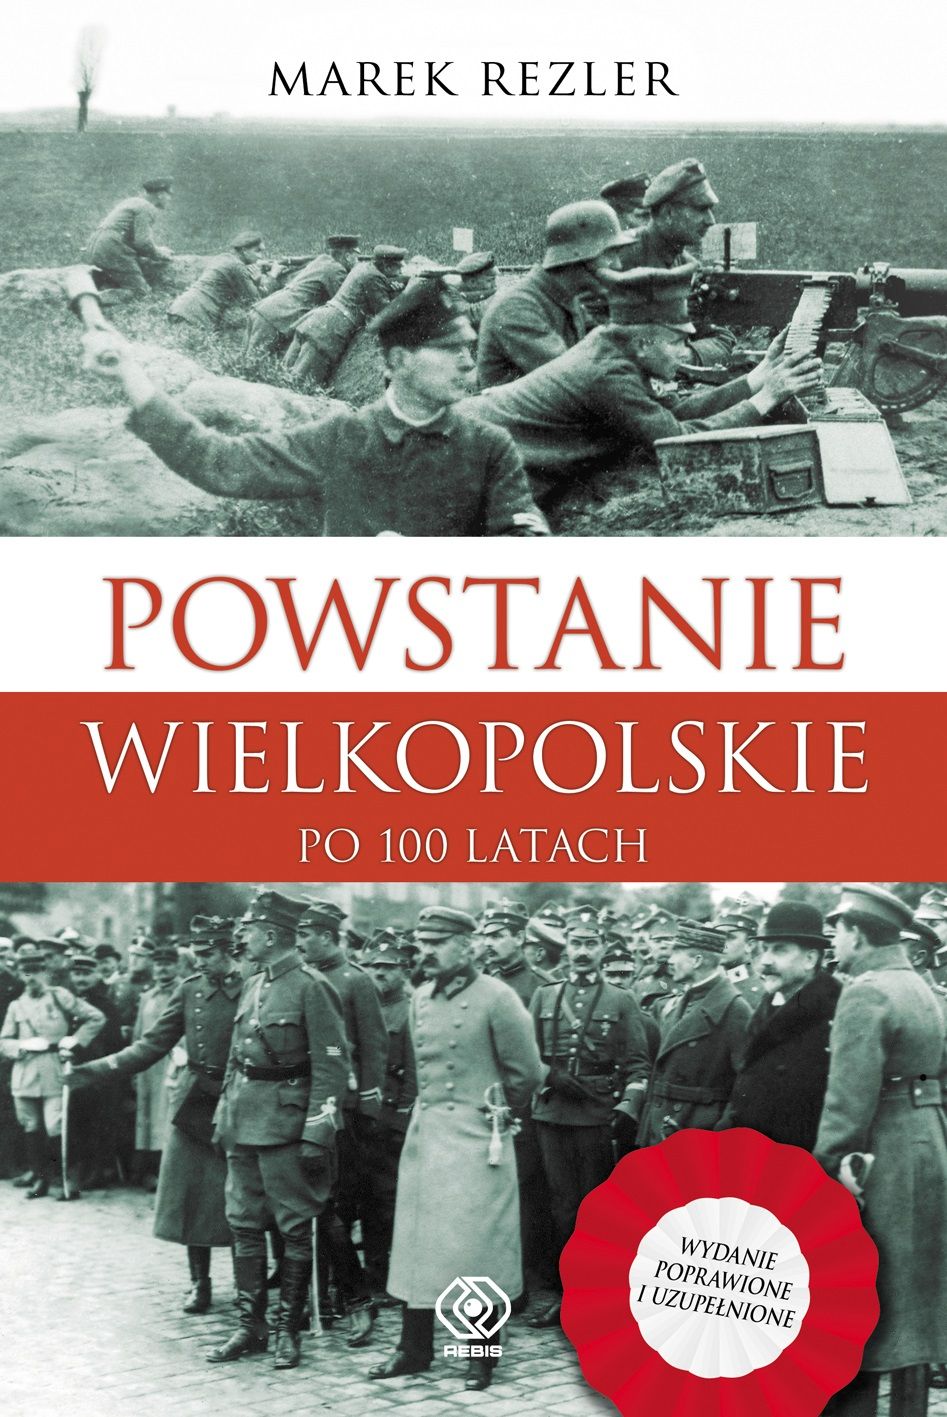  Marek Rezler, "Powstanie Wielkopolskie" 